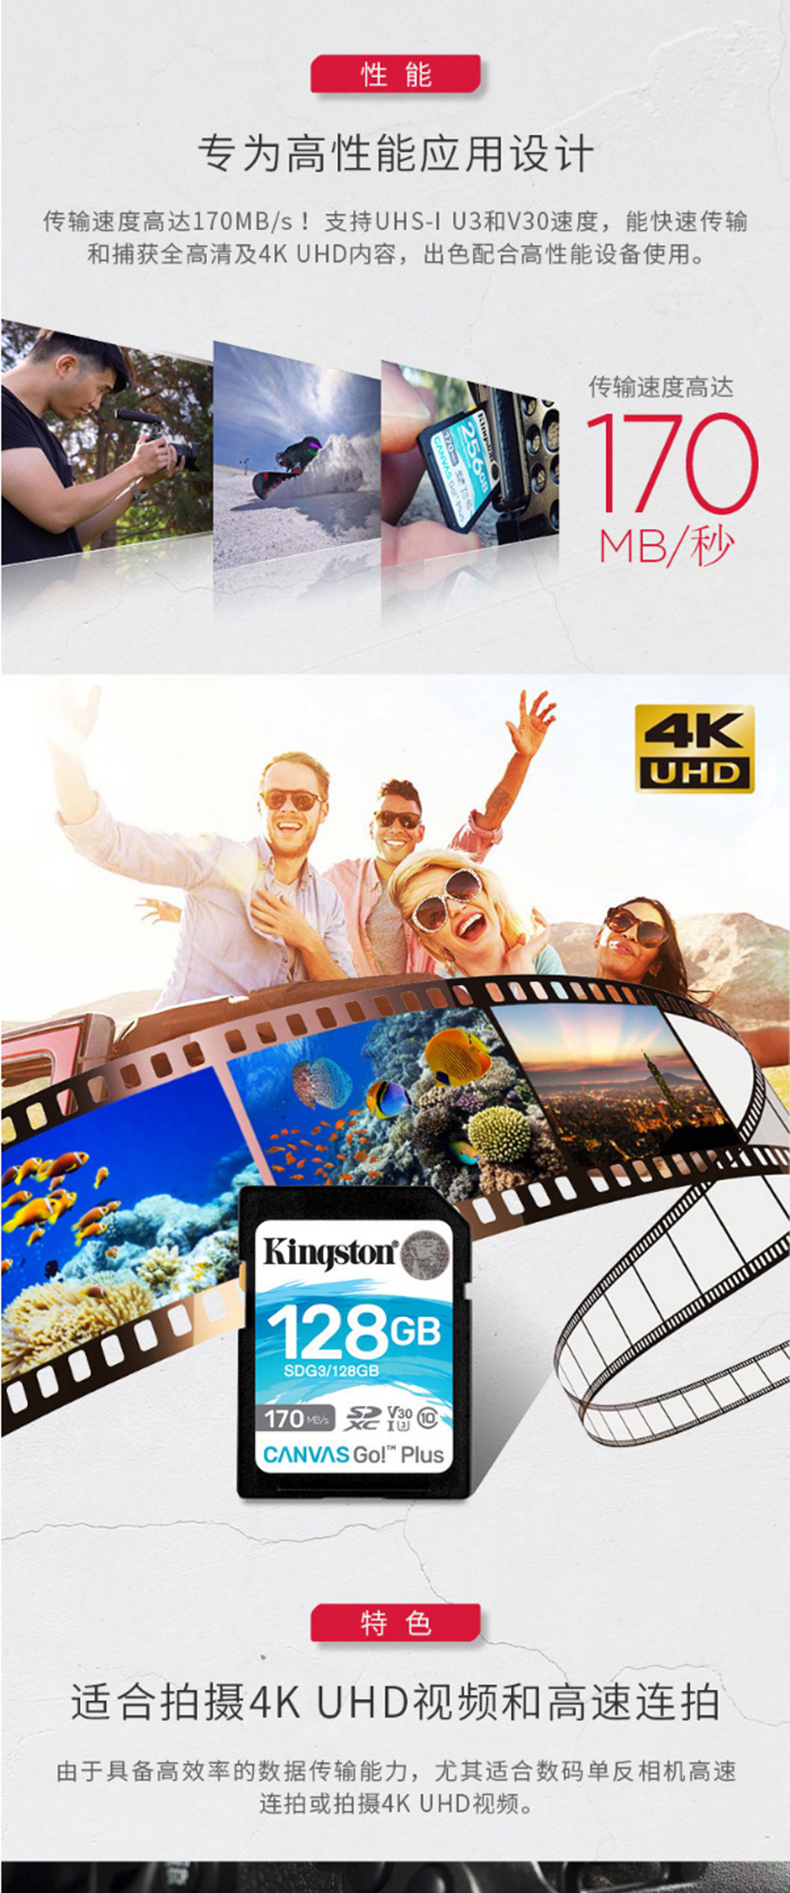 金士顿 Kingston SD 存储卡 SDG3 256GB  U3 V30 内存卡 极速版 读速170MB/s 写速90MB/s 4K超高清视频